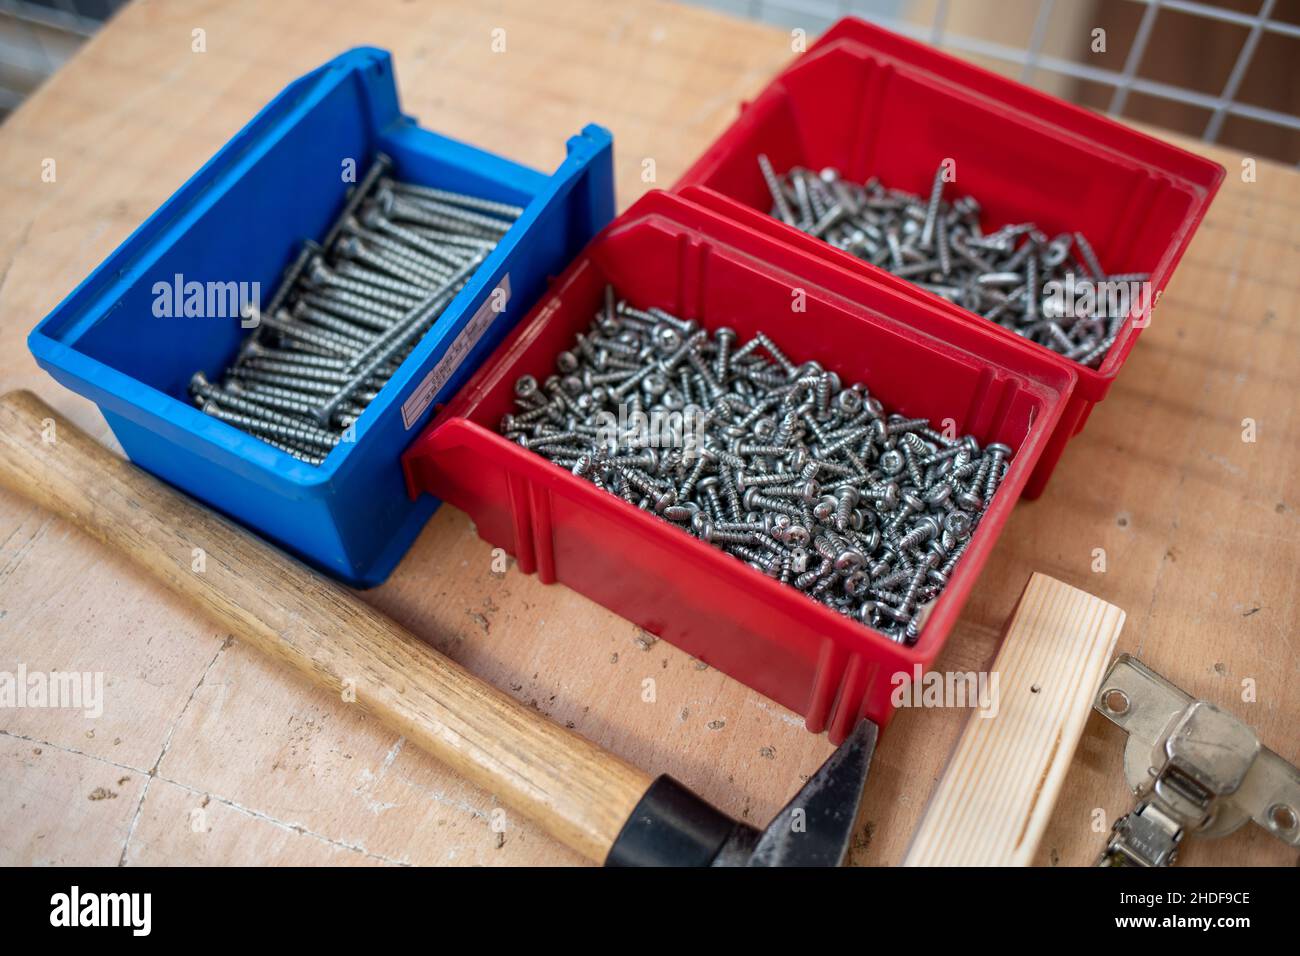 Acercamiento a caja de tornillos con tornillos y taquetes de diferentes  tamaños y medidas Stock Photo